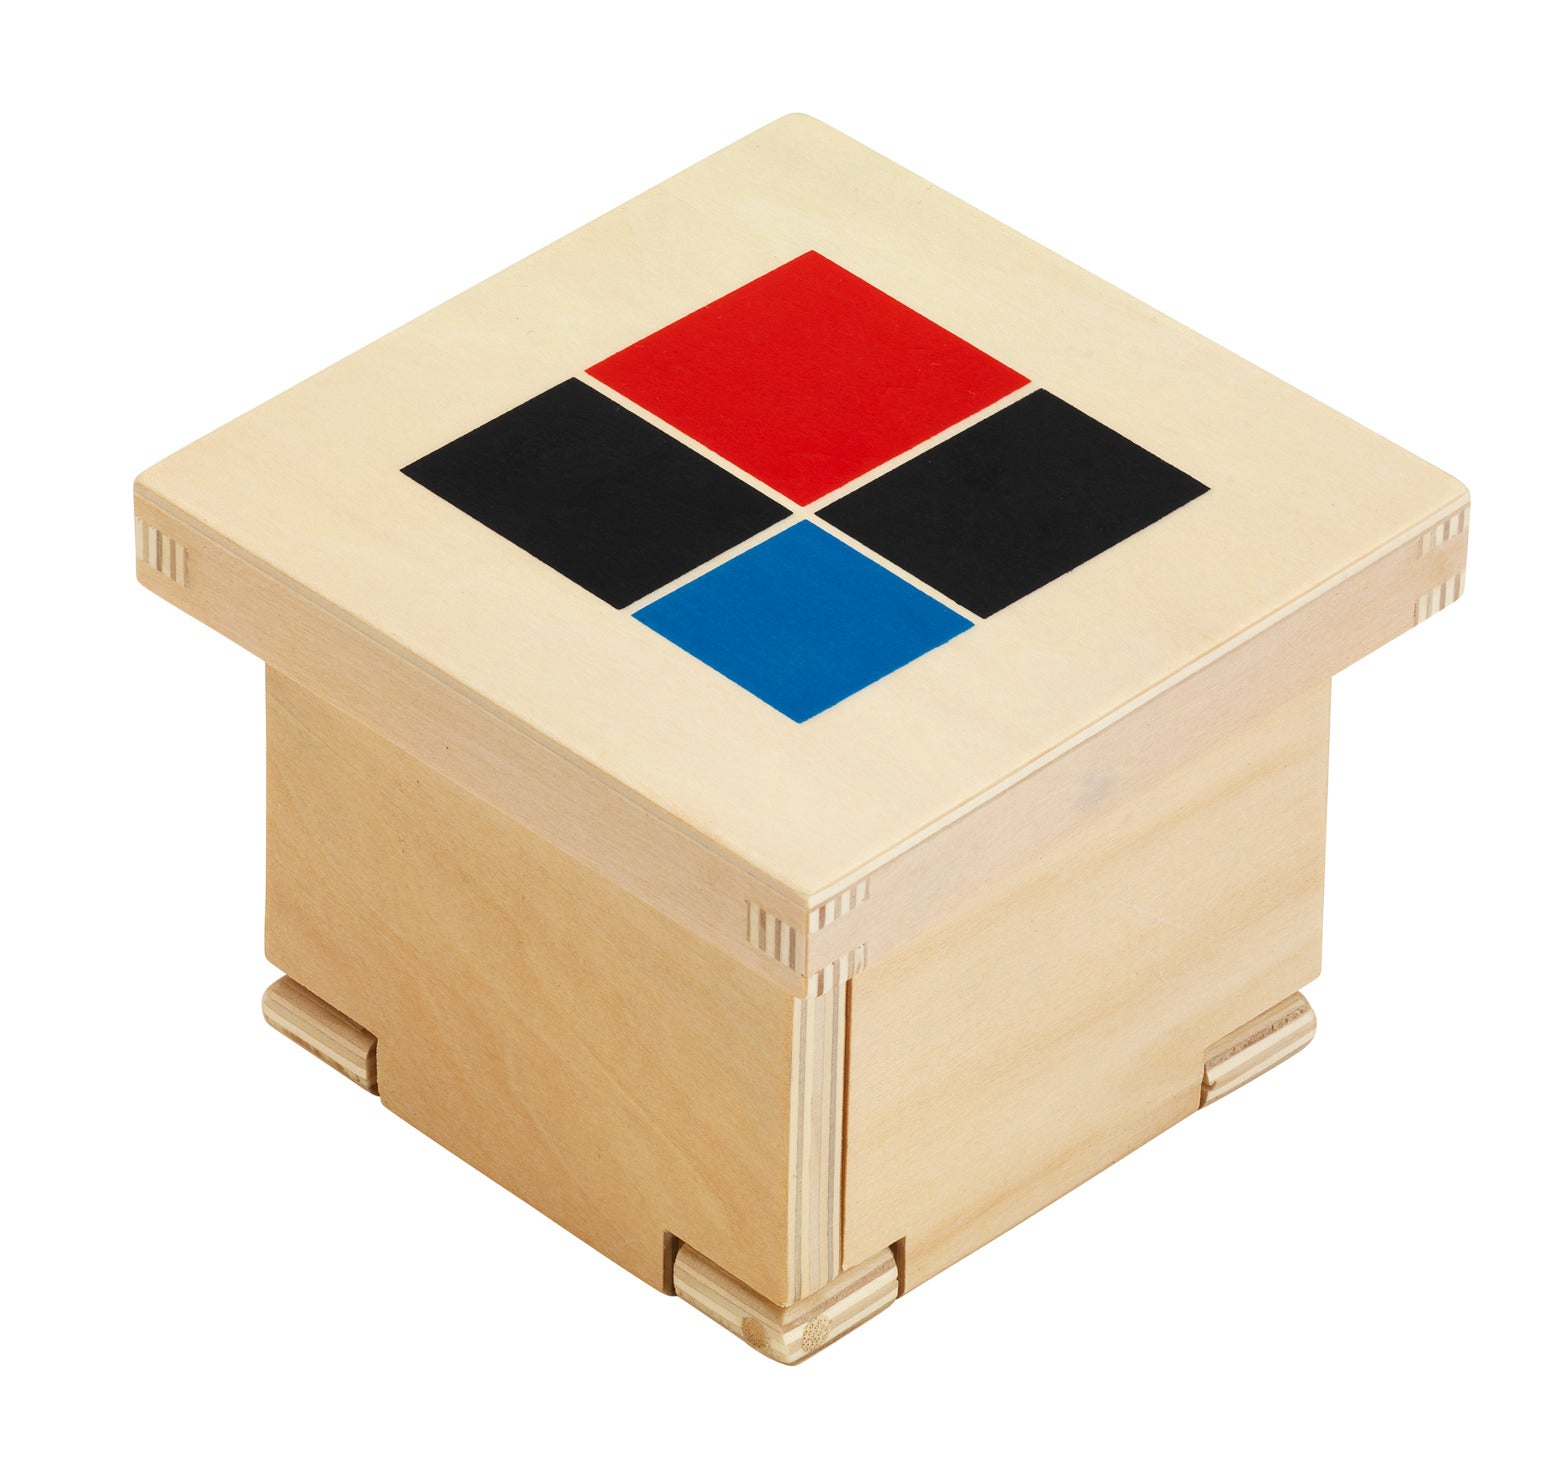 Montessori binomial cube